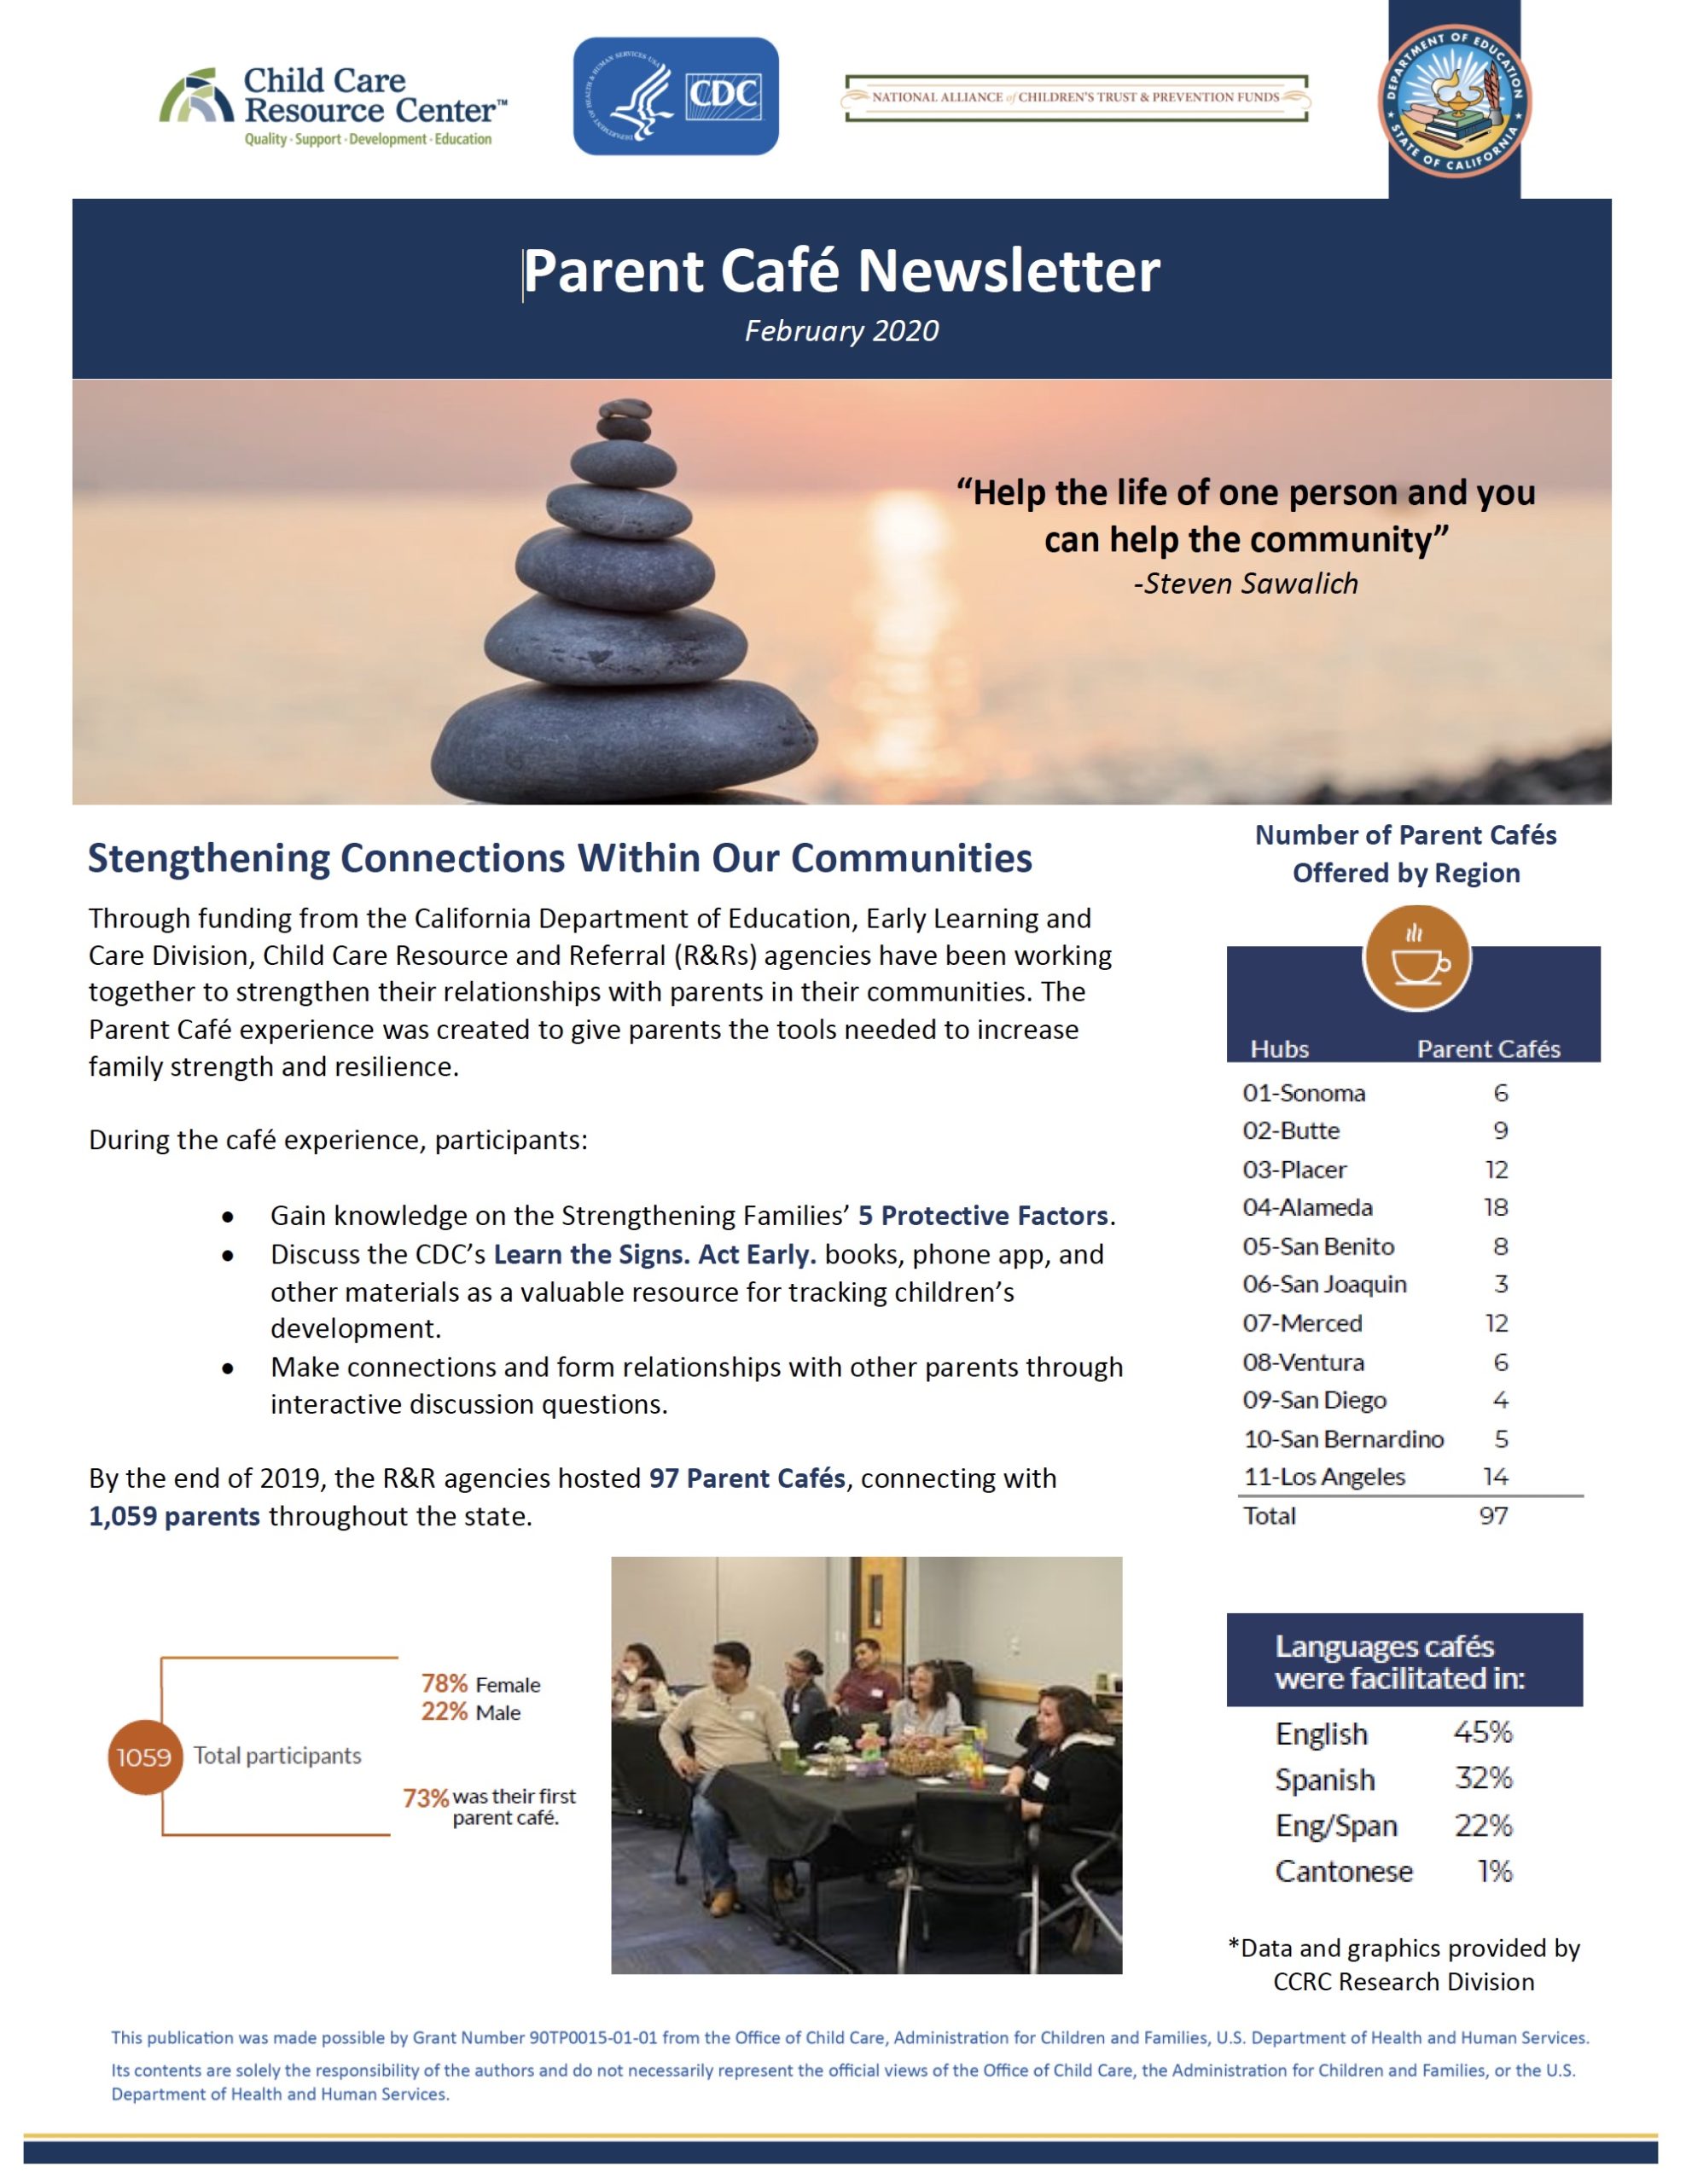 Parent Café Newsletter February 2020 Cover